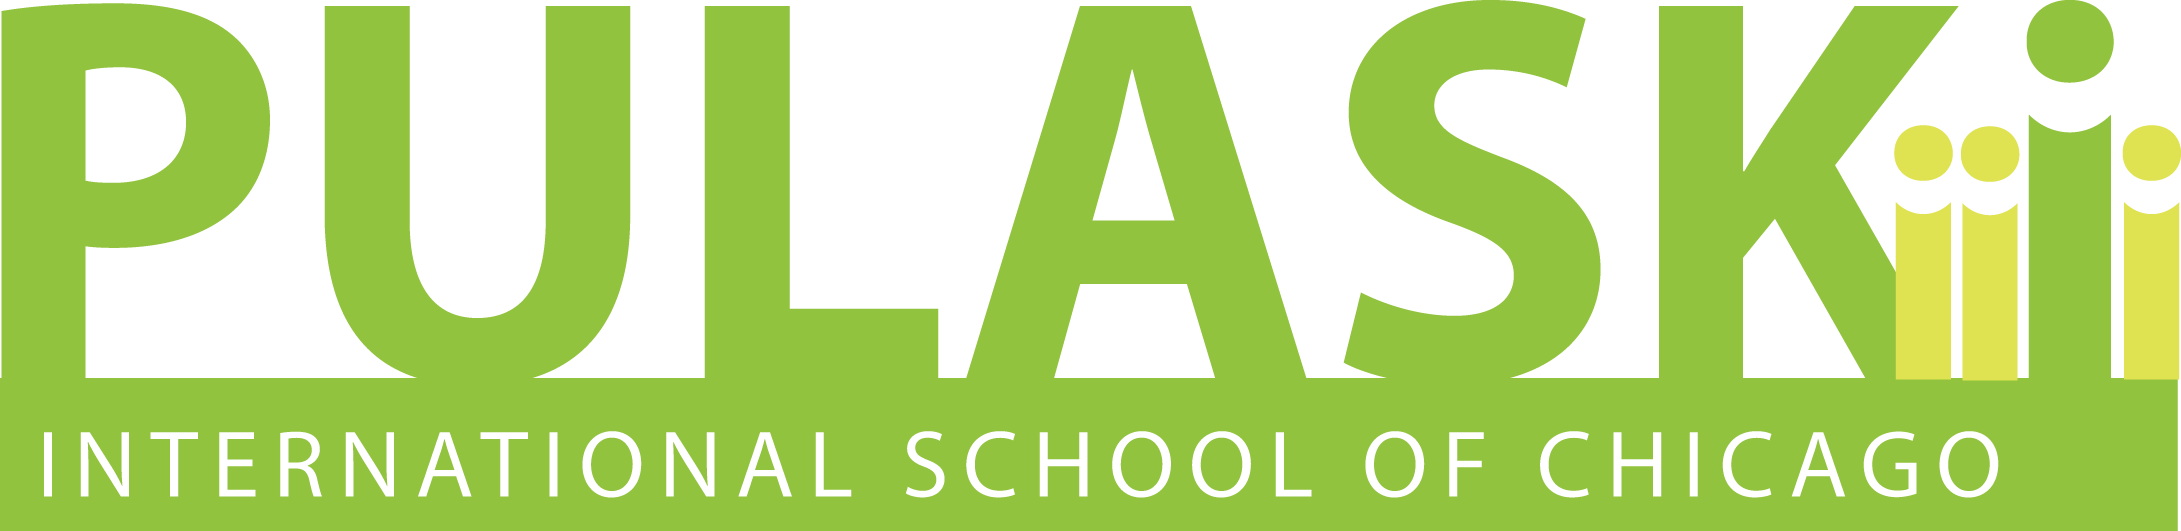 Pulaski Logo - Pulaski International School of Chicago